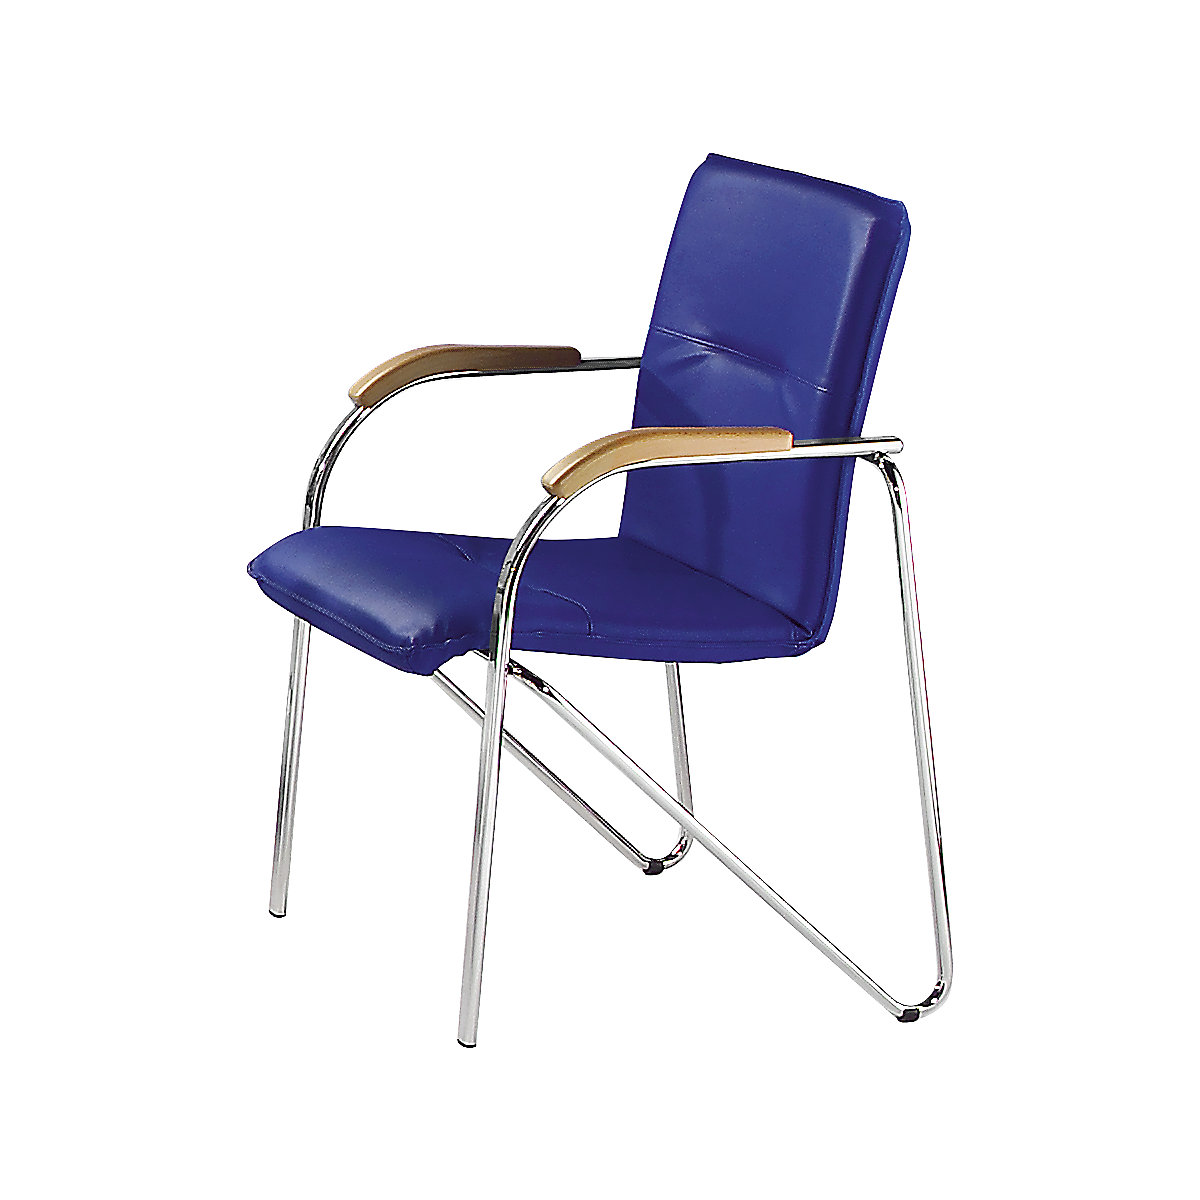 Egymásra rakható szék bőr kinézetű kárpittal, krómozott váz, cs. e. 2 db, kárpit színe kék-3